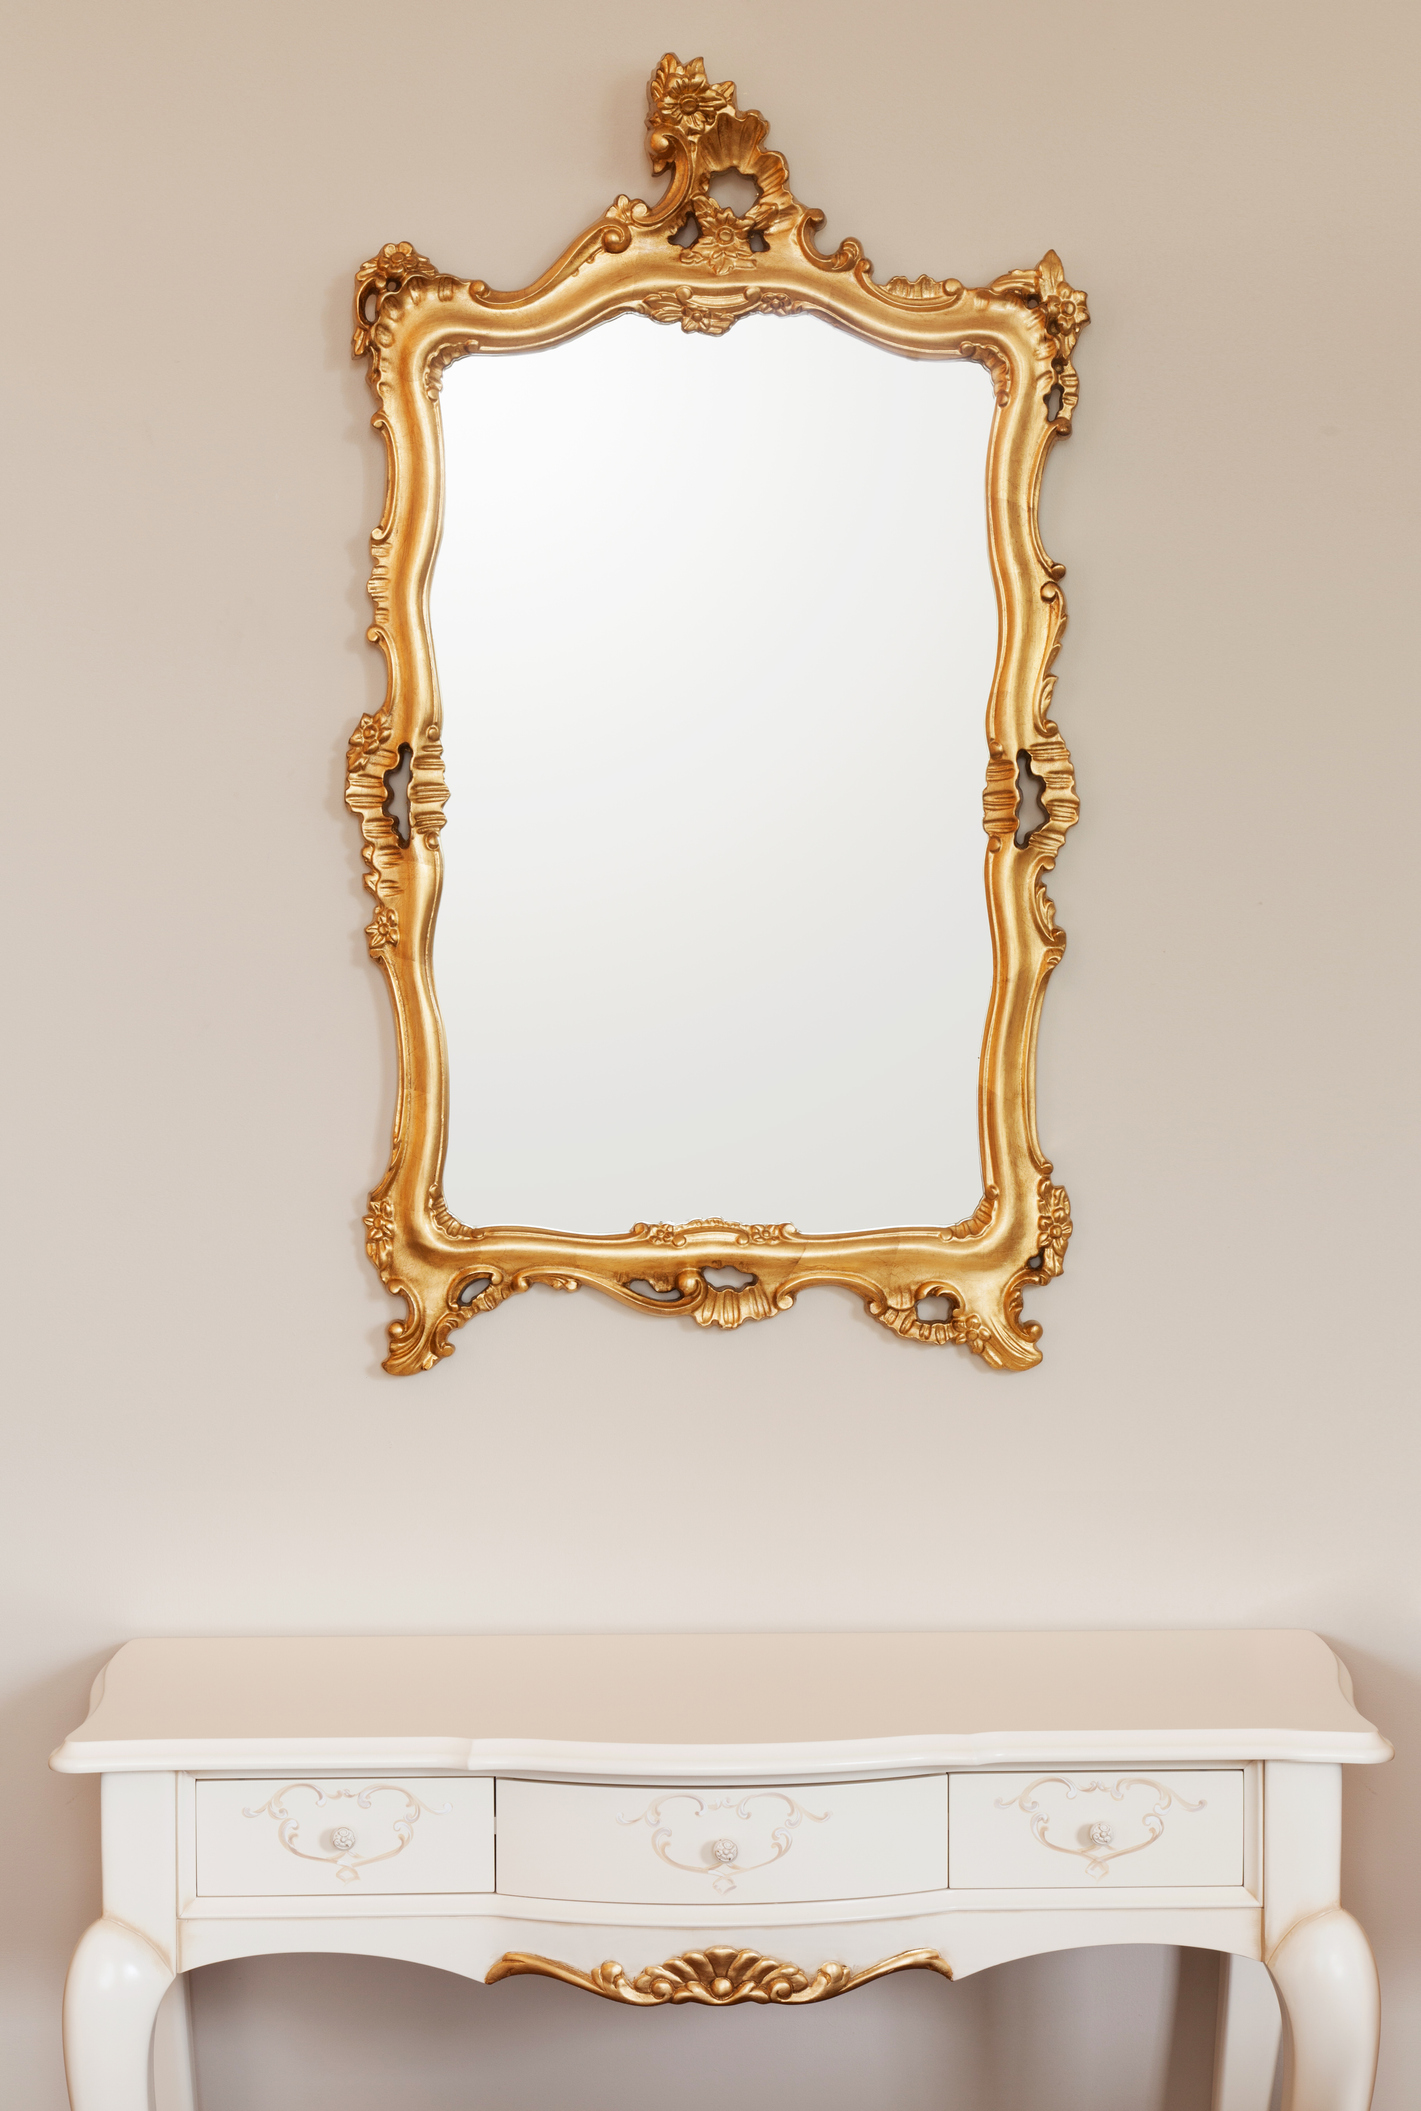 Голямо и пищно огледало, което има по-голяма рамка. Французите обичат детайлите, затова ако имате такова огледало в стаята, намалете останалите декоративни вещи, за да не изглежда претрупано и кичозно.